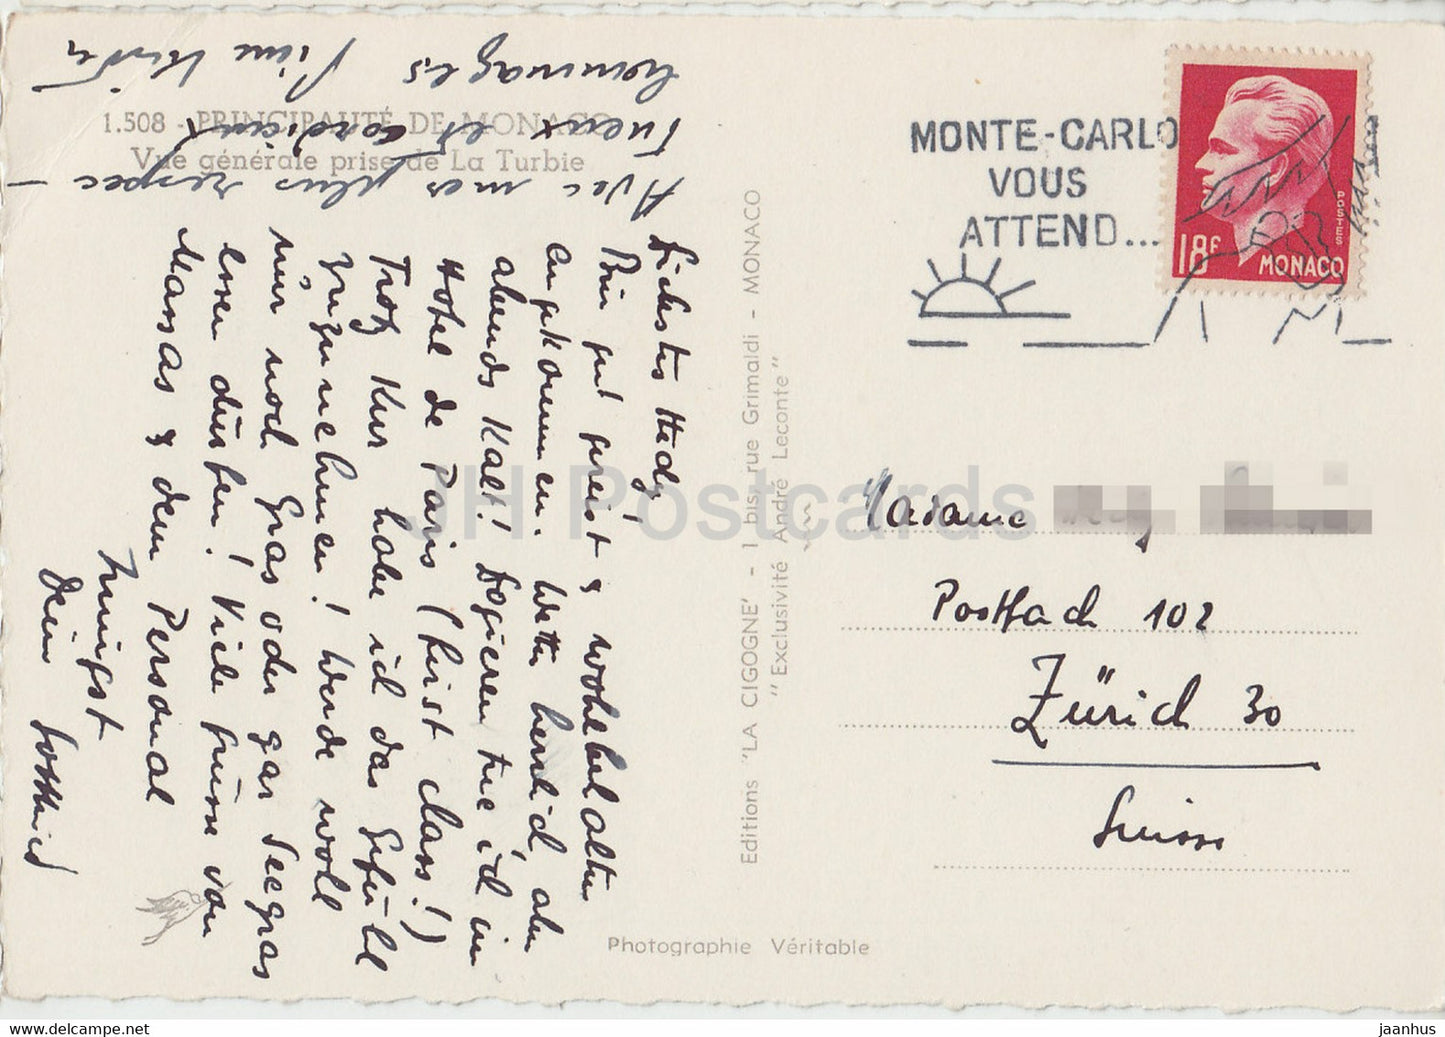 Vue Générale prise de La Turbie - carte postale ancienne - Monaco - occasion